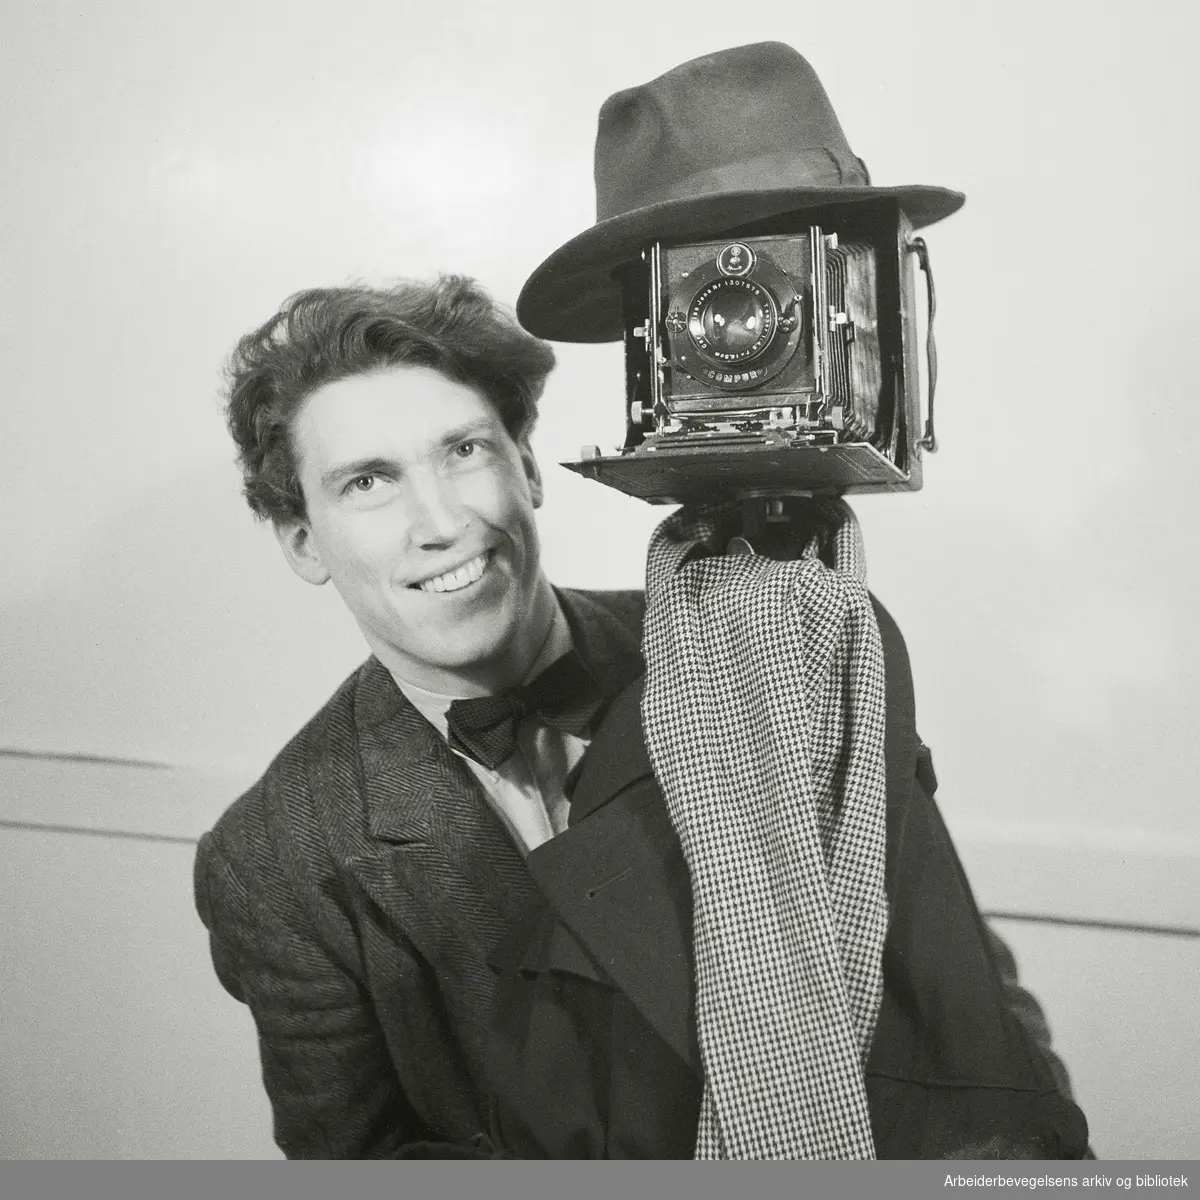 Arbeiderbladets pressefotograf Thorbjørn "Timmie" Skotaam med kamera. Udatert. Tidlig 1950-tall.